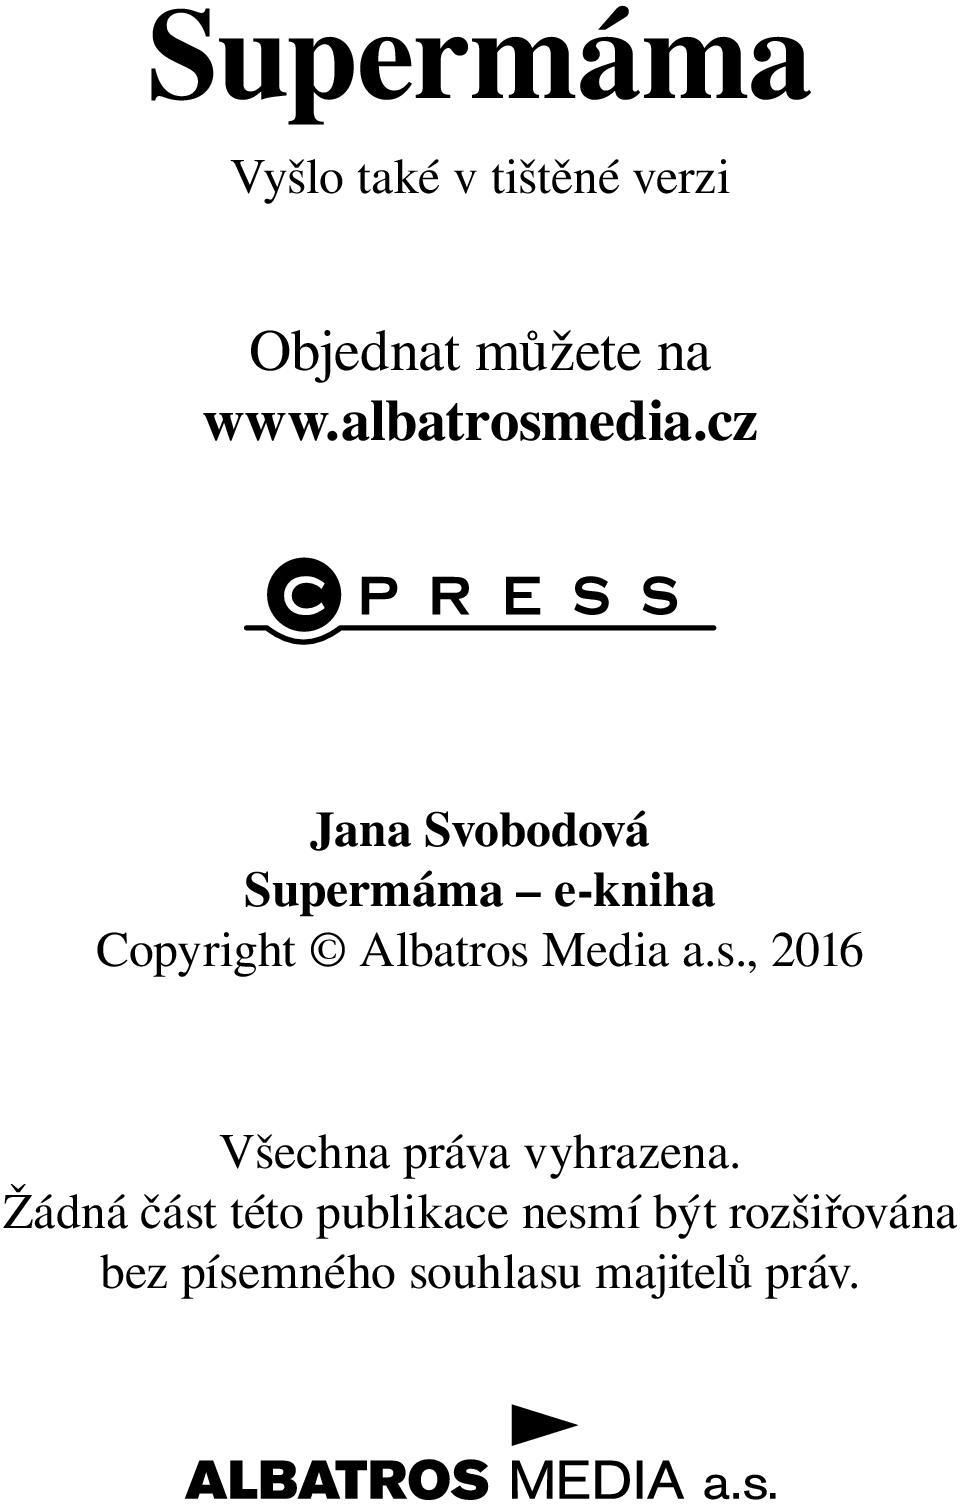 cz Jana Svobodová Supermáma e-kniha Copyright Albatros Media a.